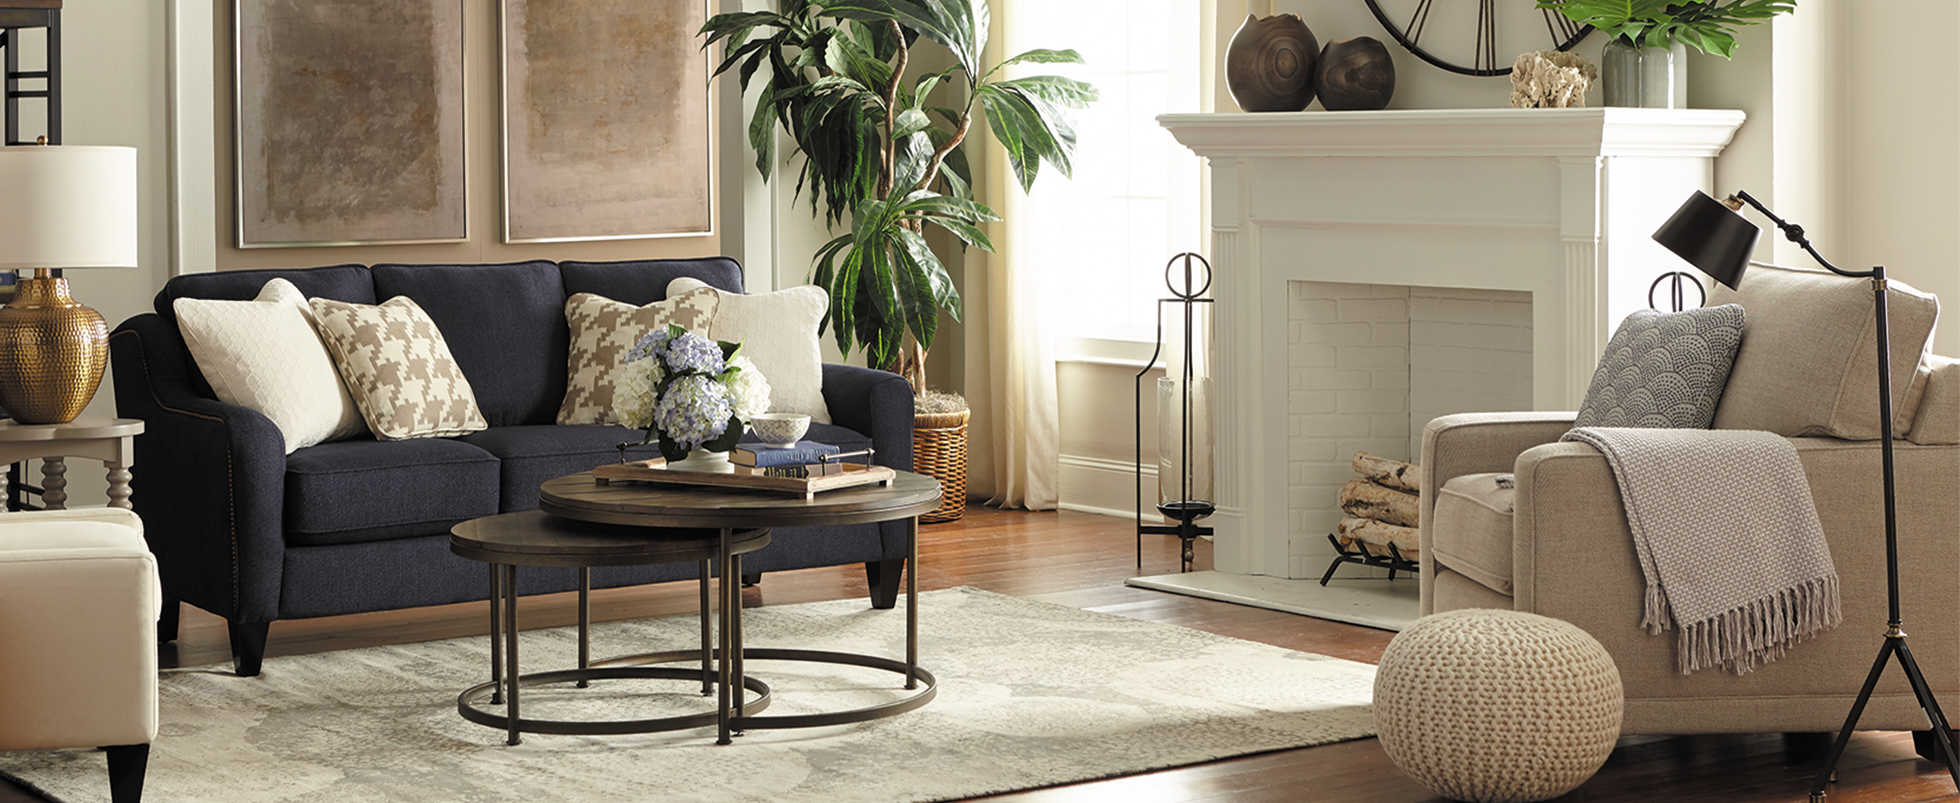 Design Inspirations La Z Boy, Lazy Boy Living Room Sets